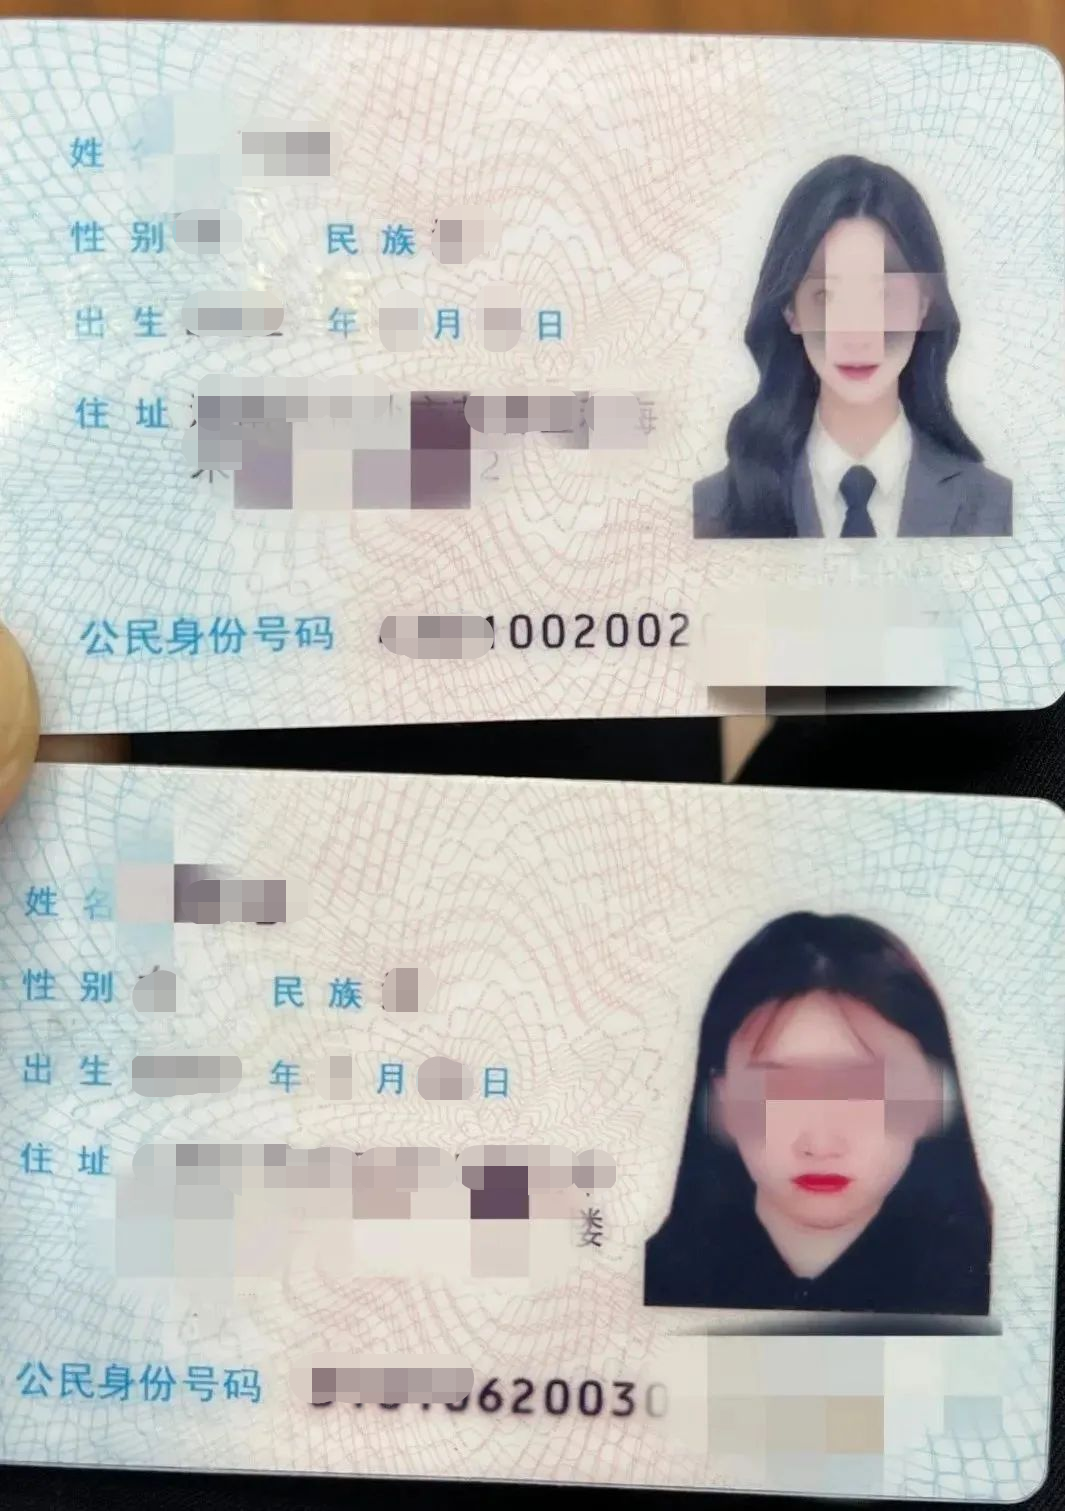 身份证照片 女孩子图片